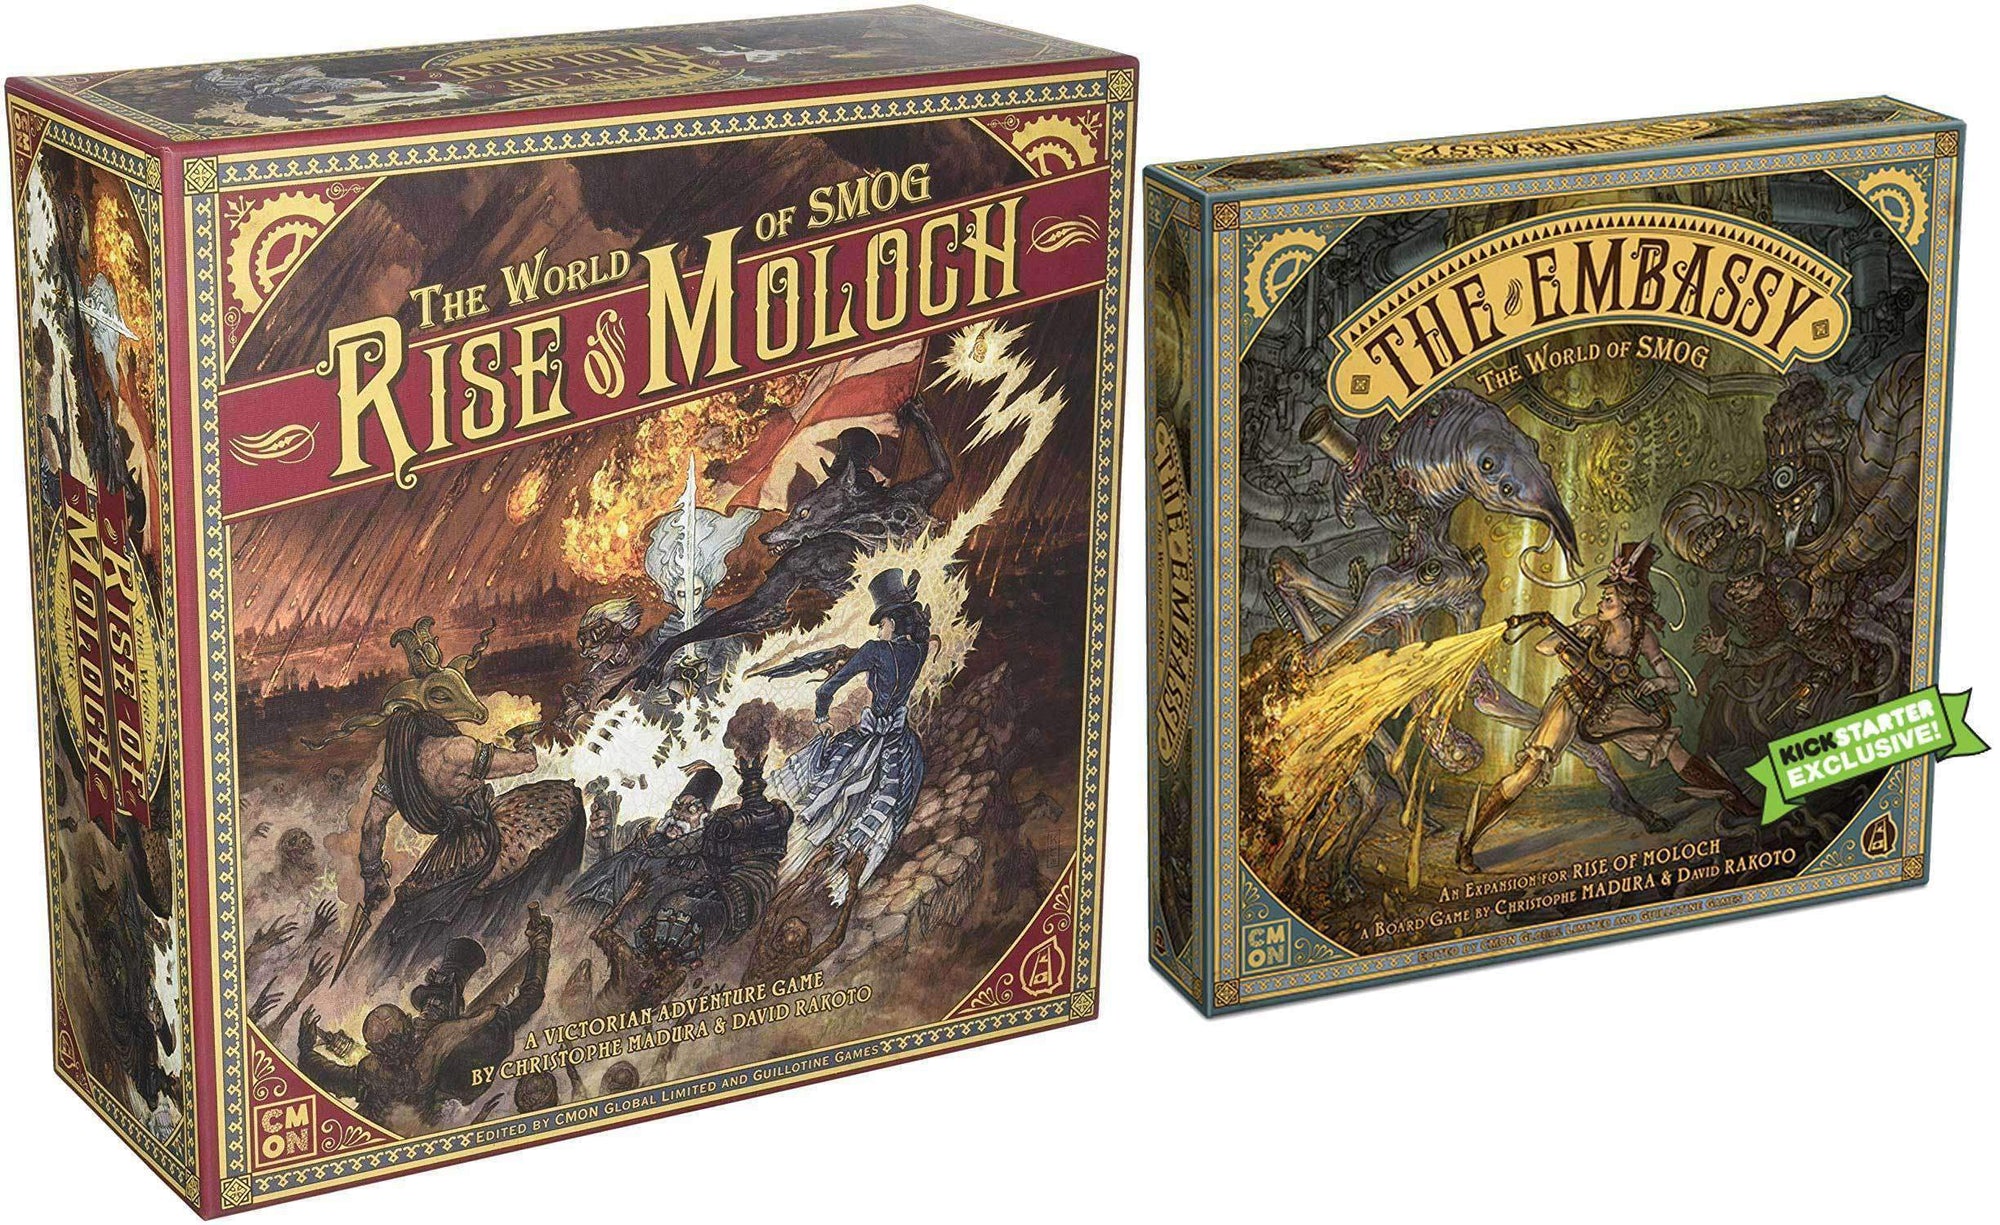 World of Smog: Rise of Moloch com expansão da embaixada (Kickstarter Special) jogo de tabuleiro Kickstarter CMON Limitado